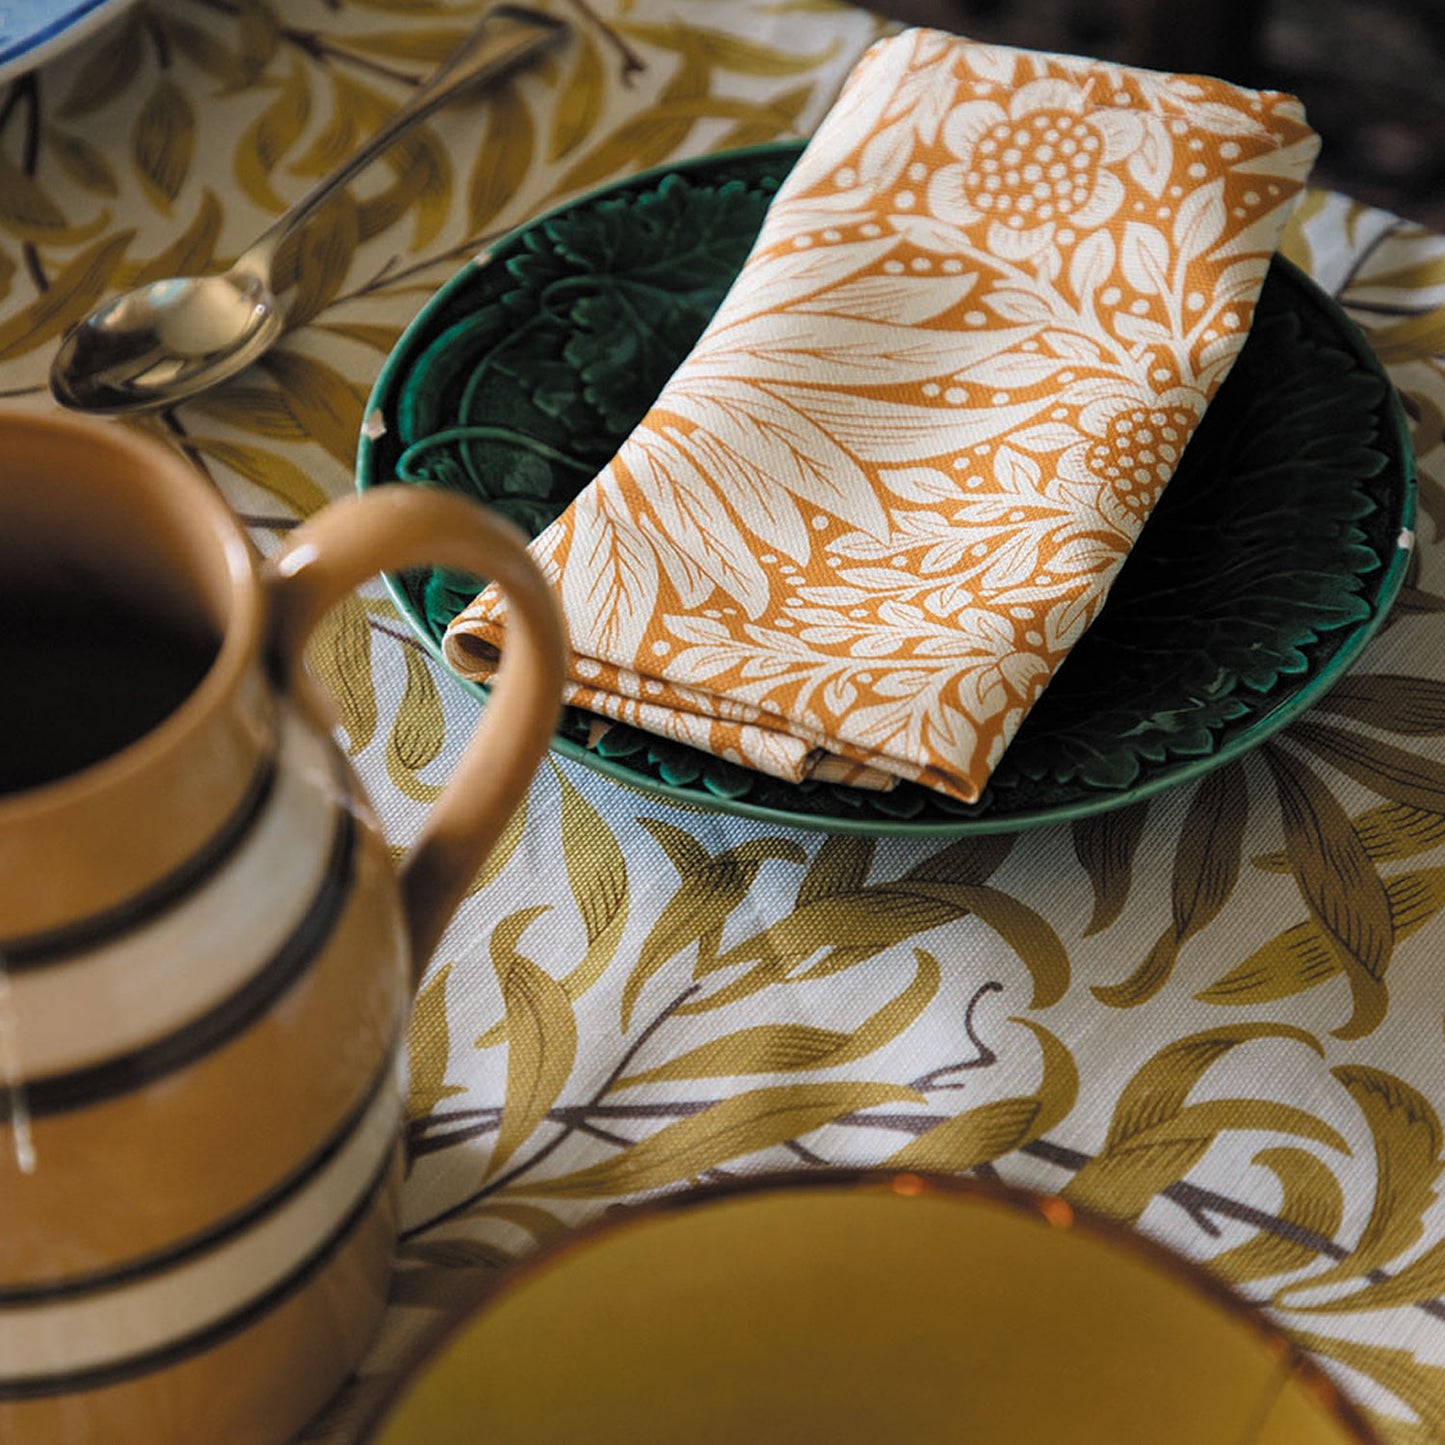 'Marigold' Cream/Orange Napkin - Cornubia Collection